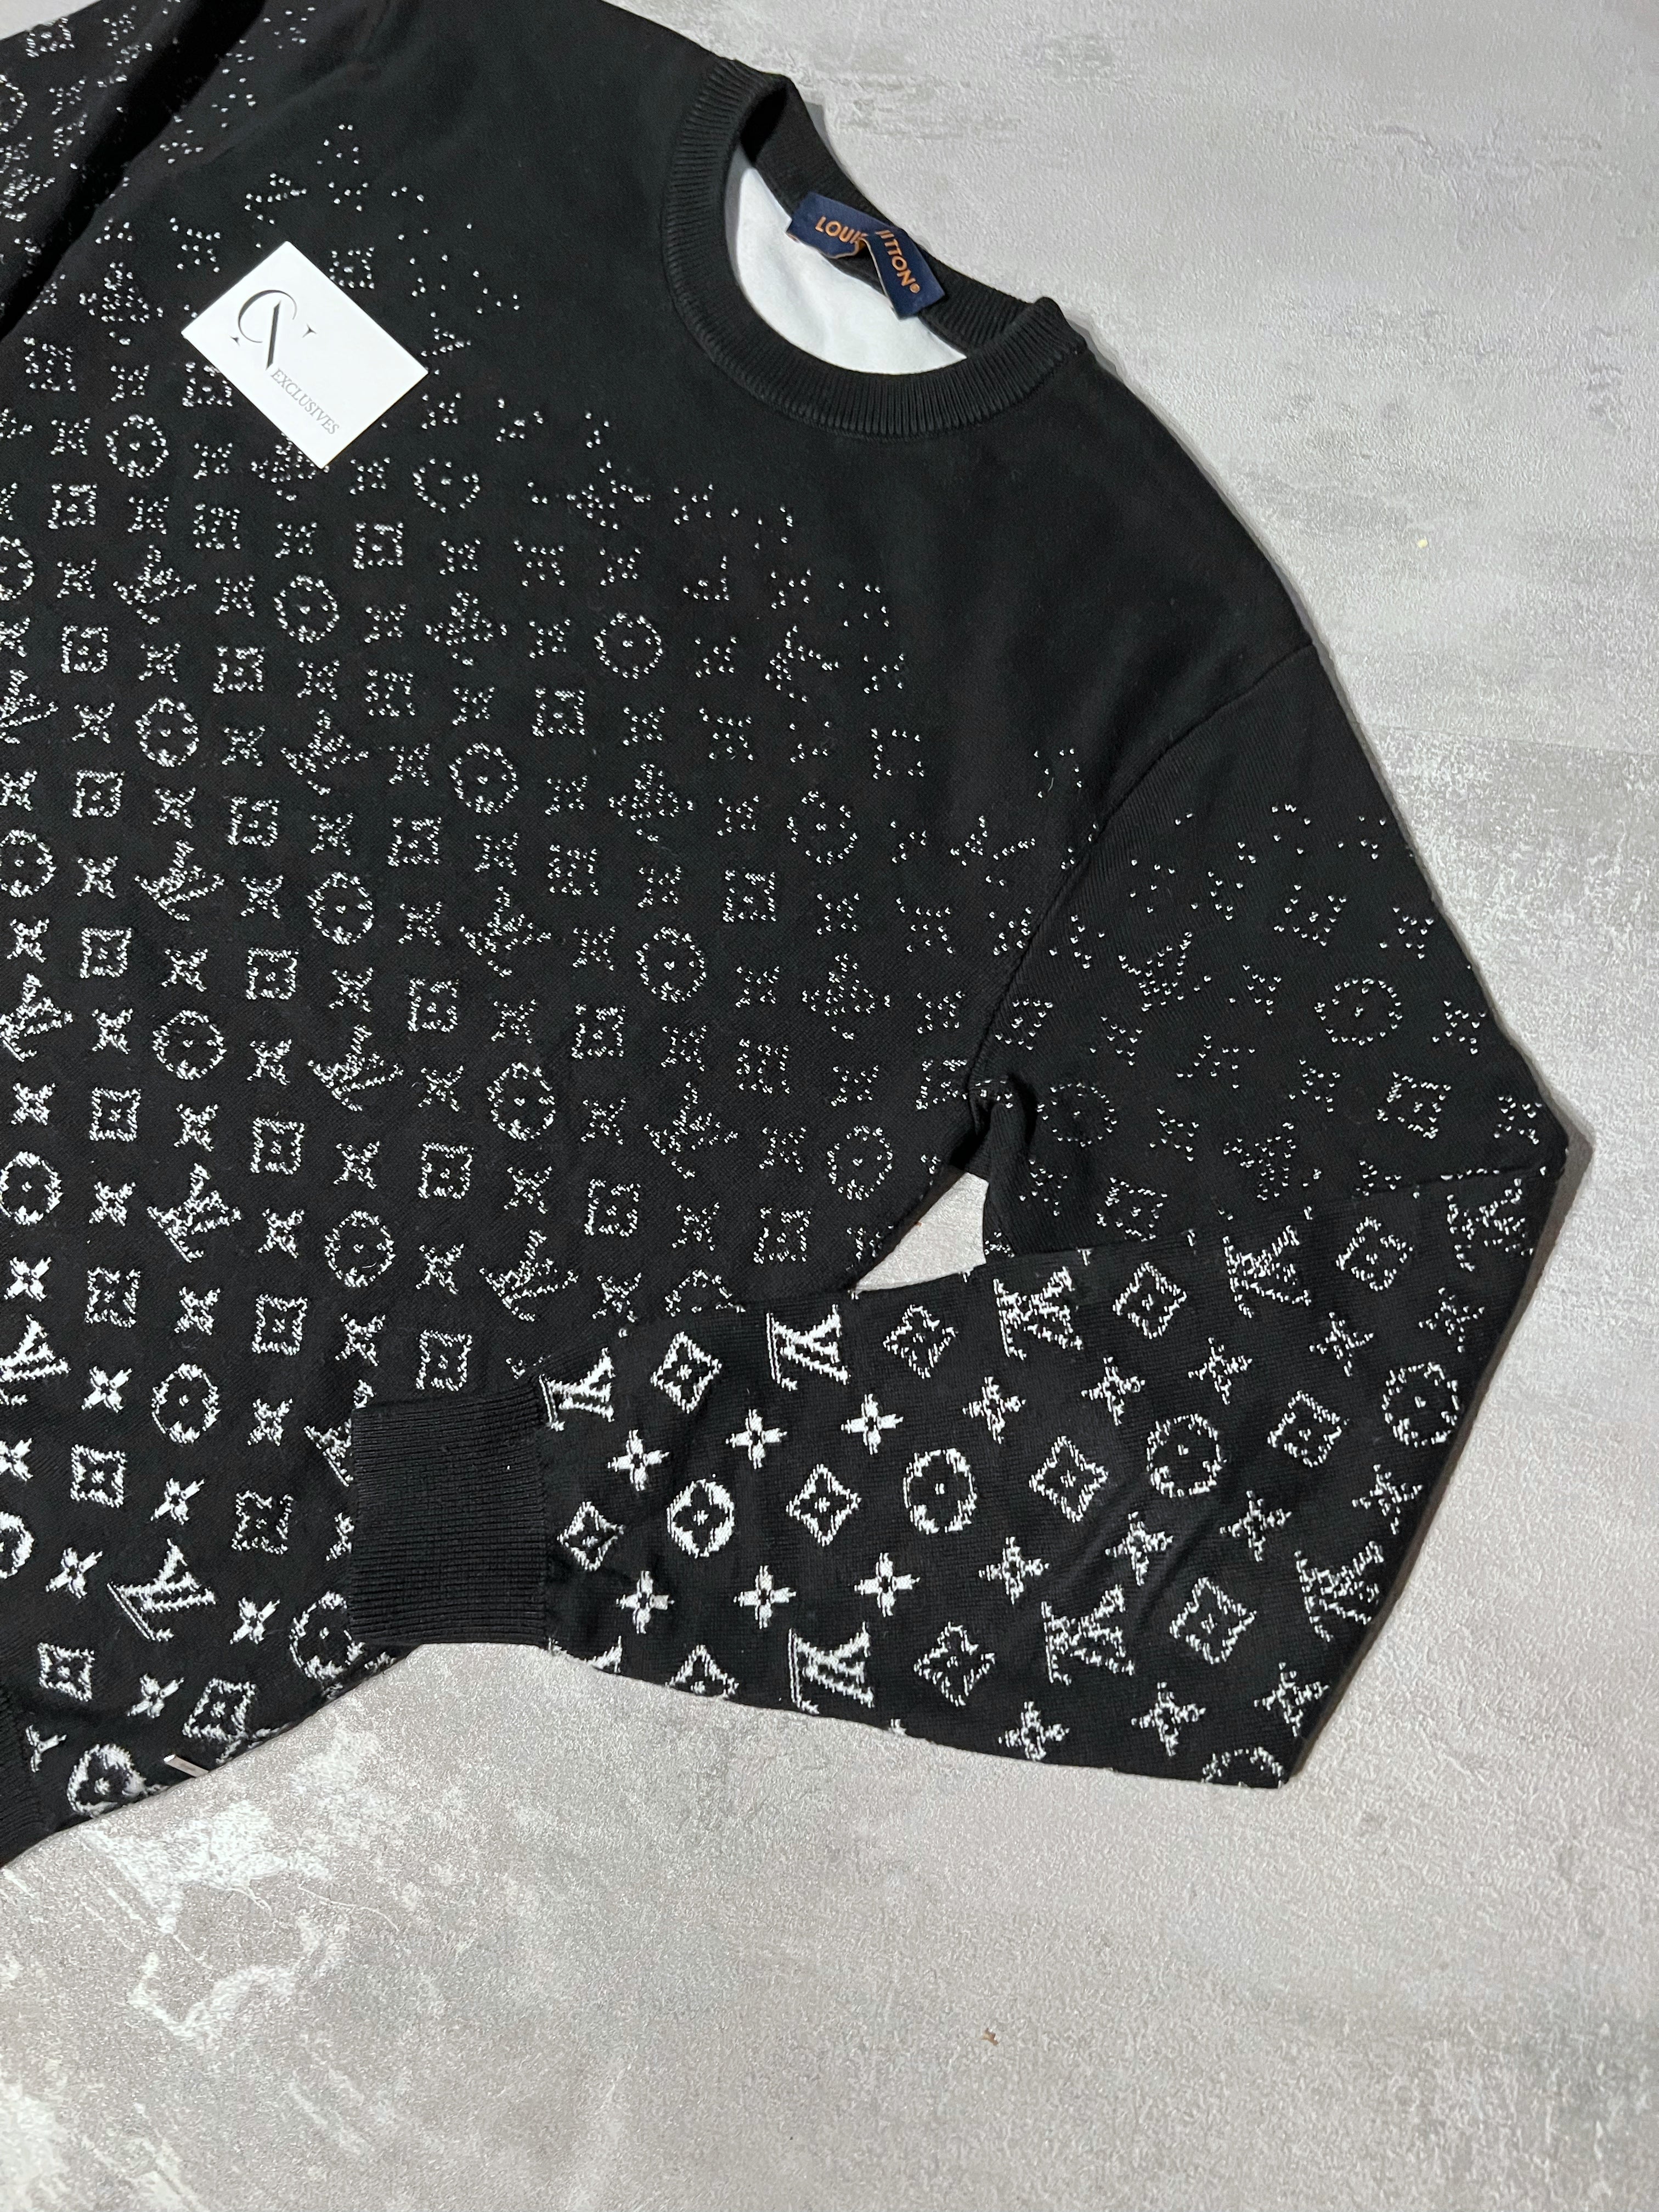 Monogram Black Logo Louis Vuitton Shirt, hoodie, sweater, long